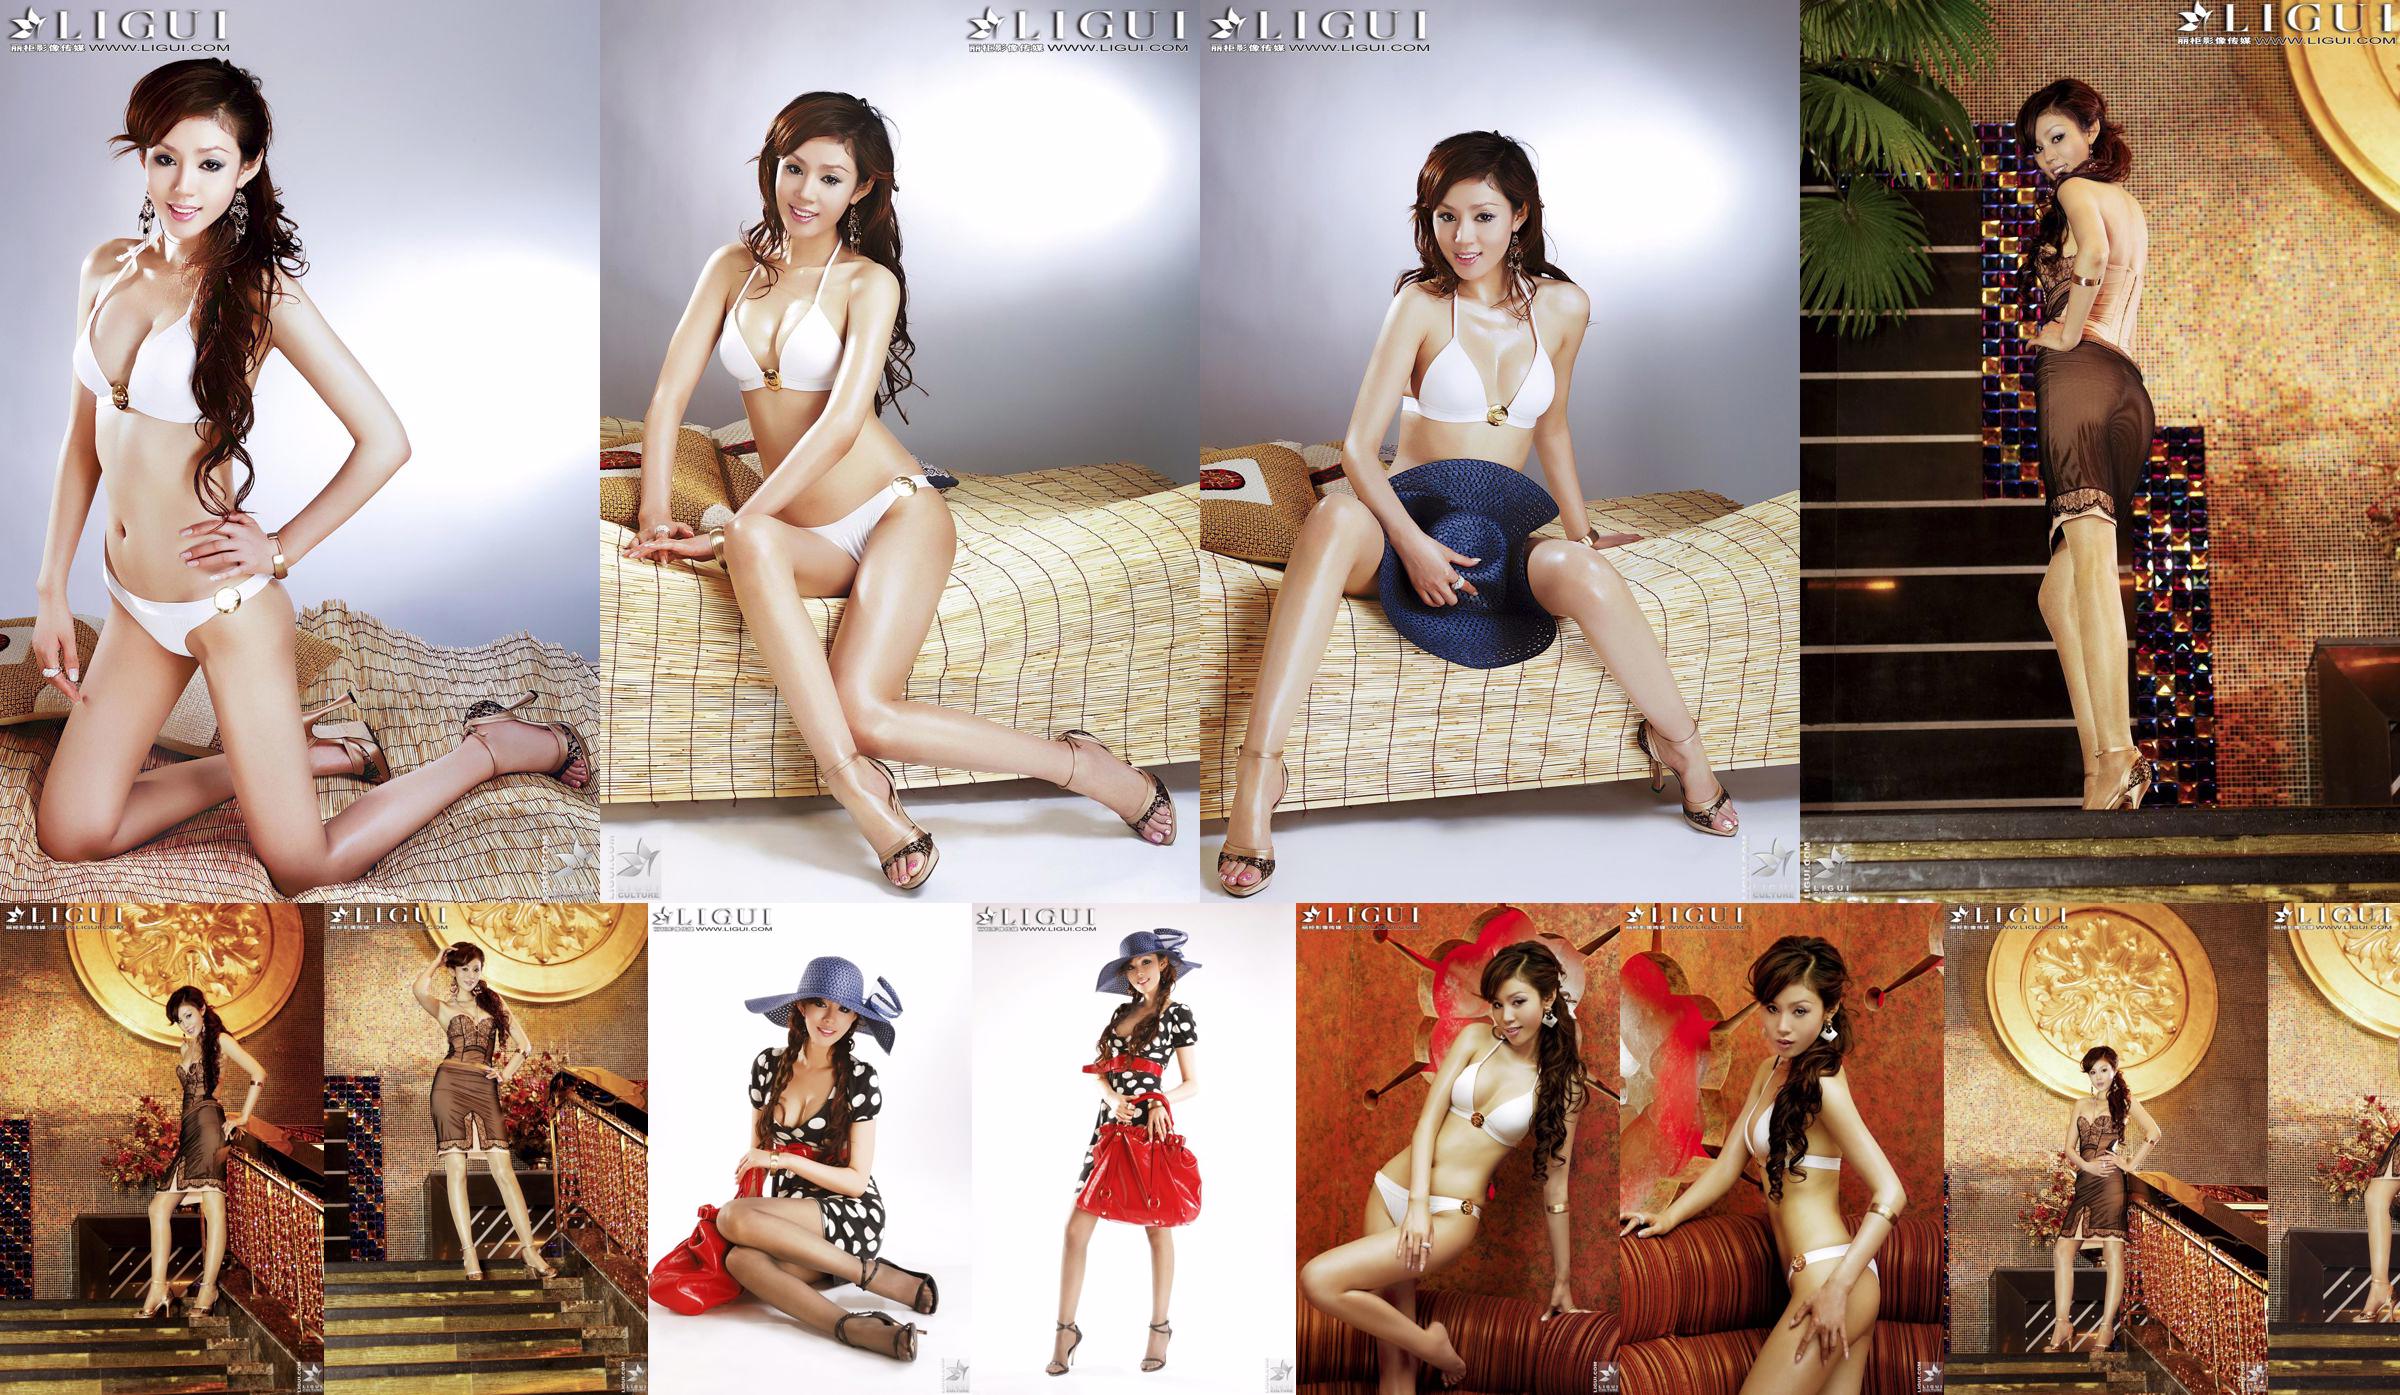 [丽 柜 LiGui] Model Yao Jinjins "Bikini + Kleid" Schöne Beine und seidige Füße Foto Bild No.f56671 Seite 3